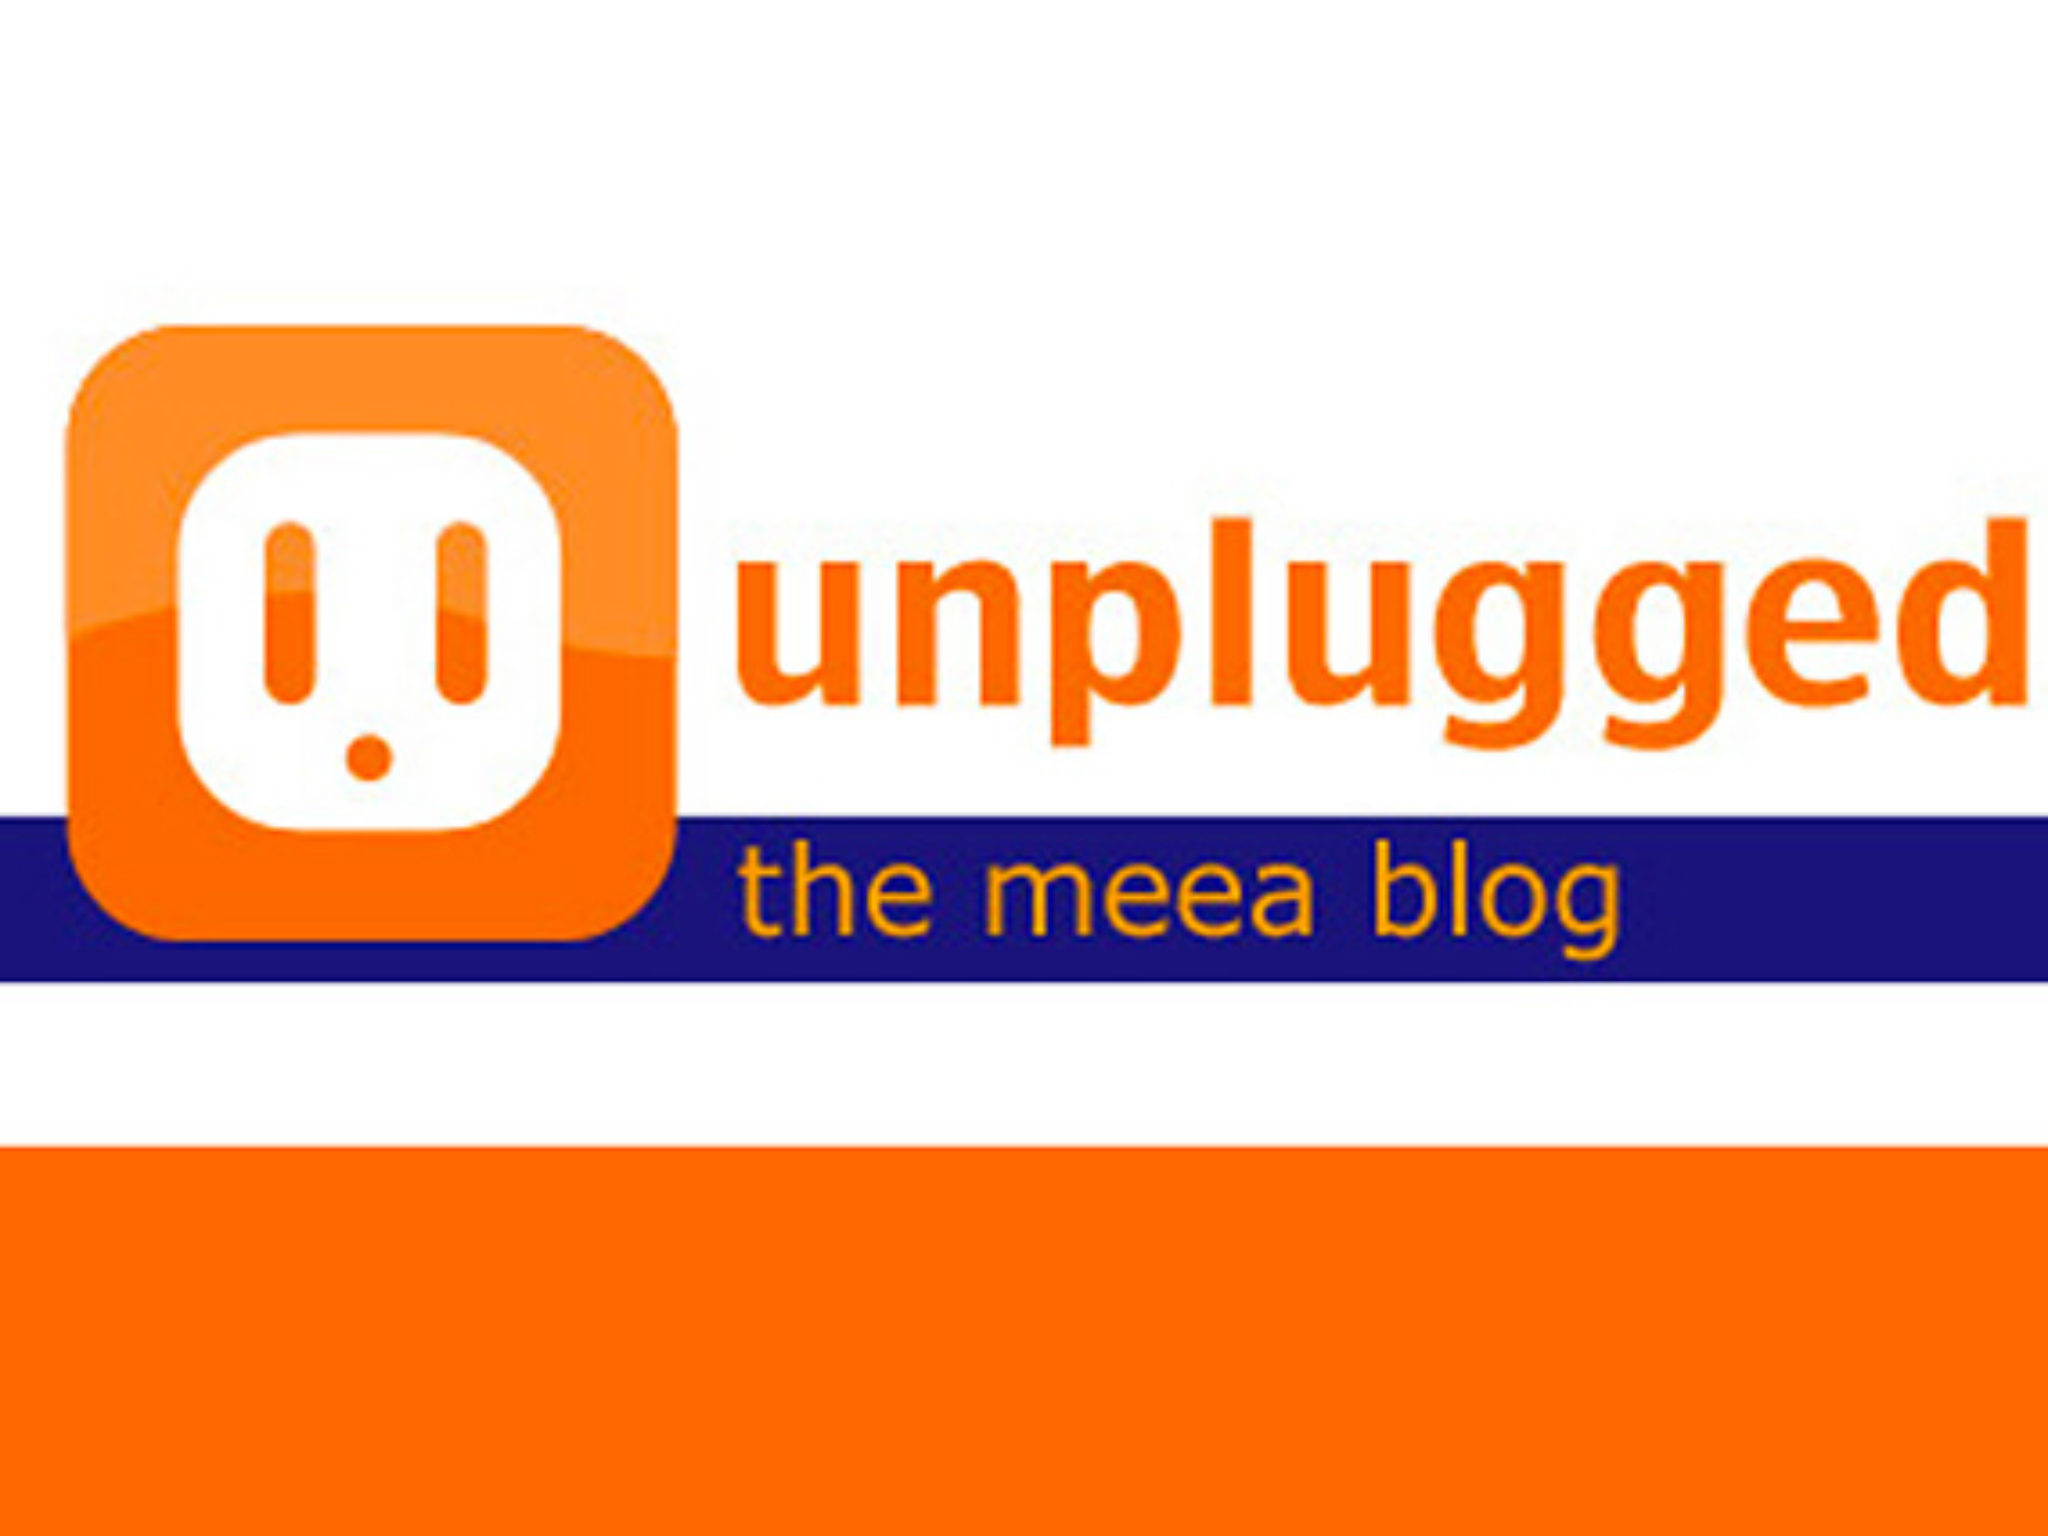 MEEAlogo066__0033_meea unplugged